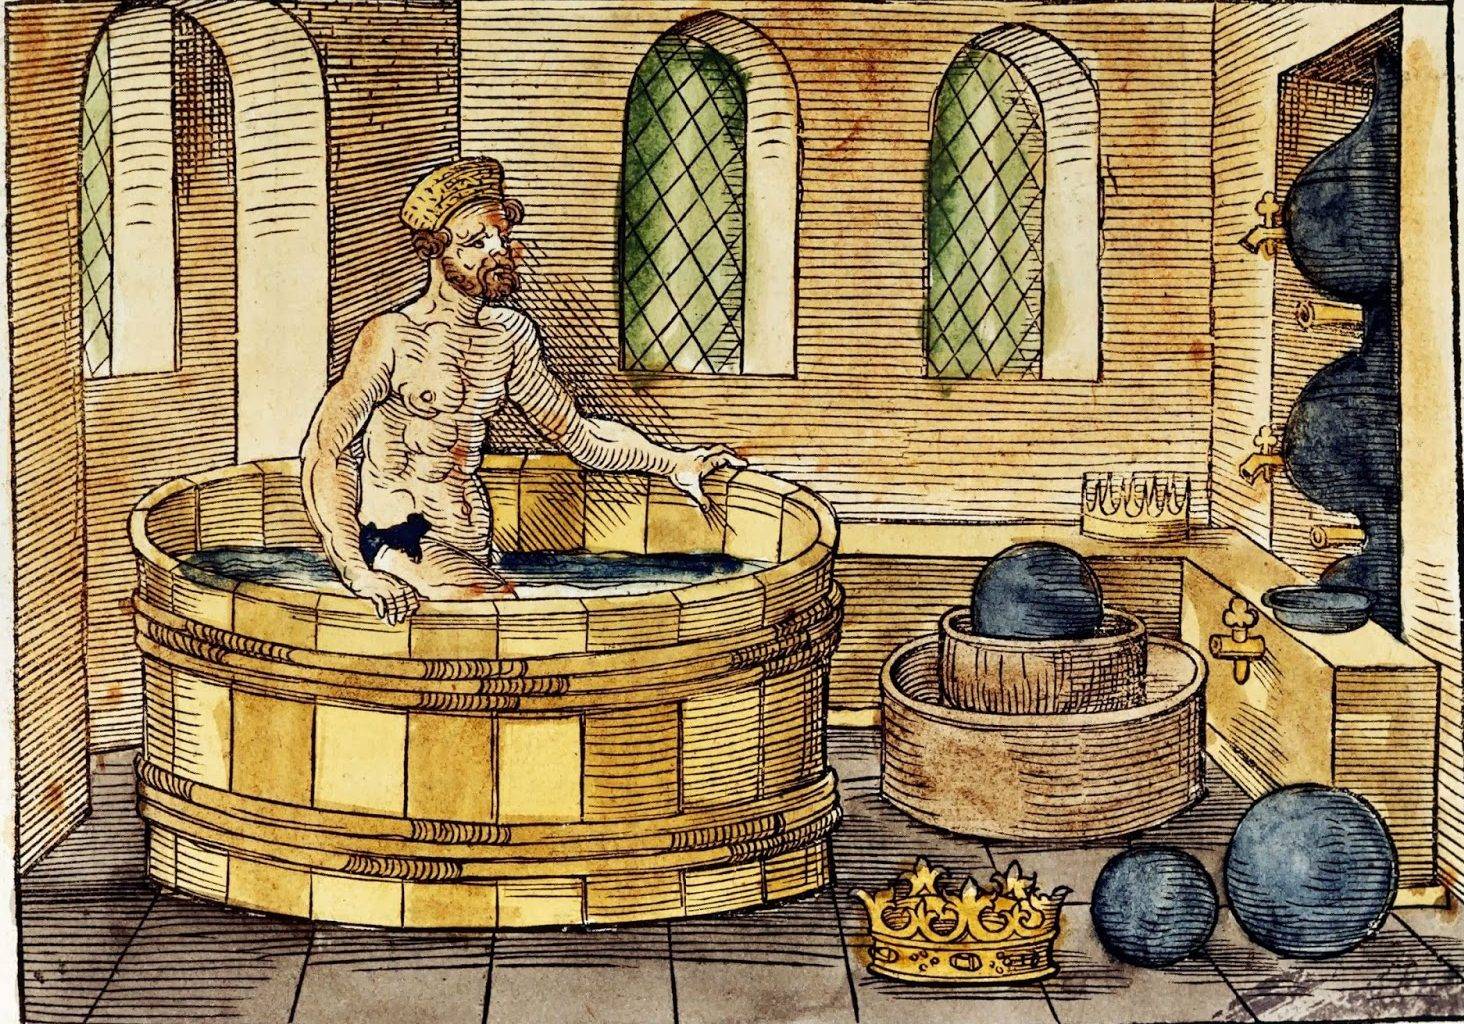 Архимед. Гравюра XVI века